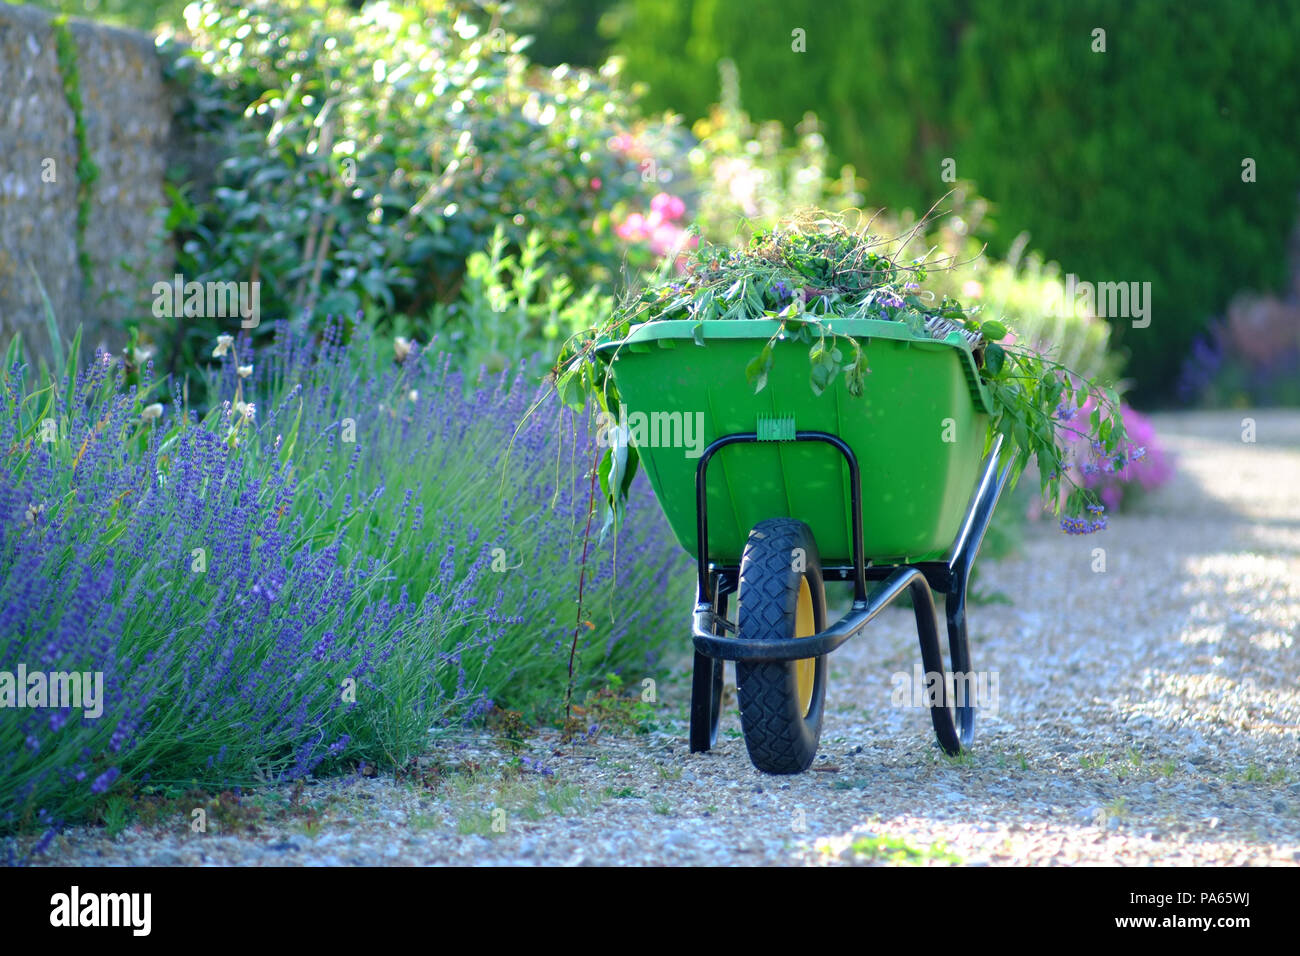 Green wheelbarrow in an English country garden. Stock Photo